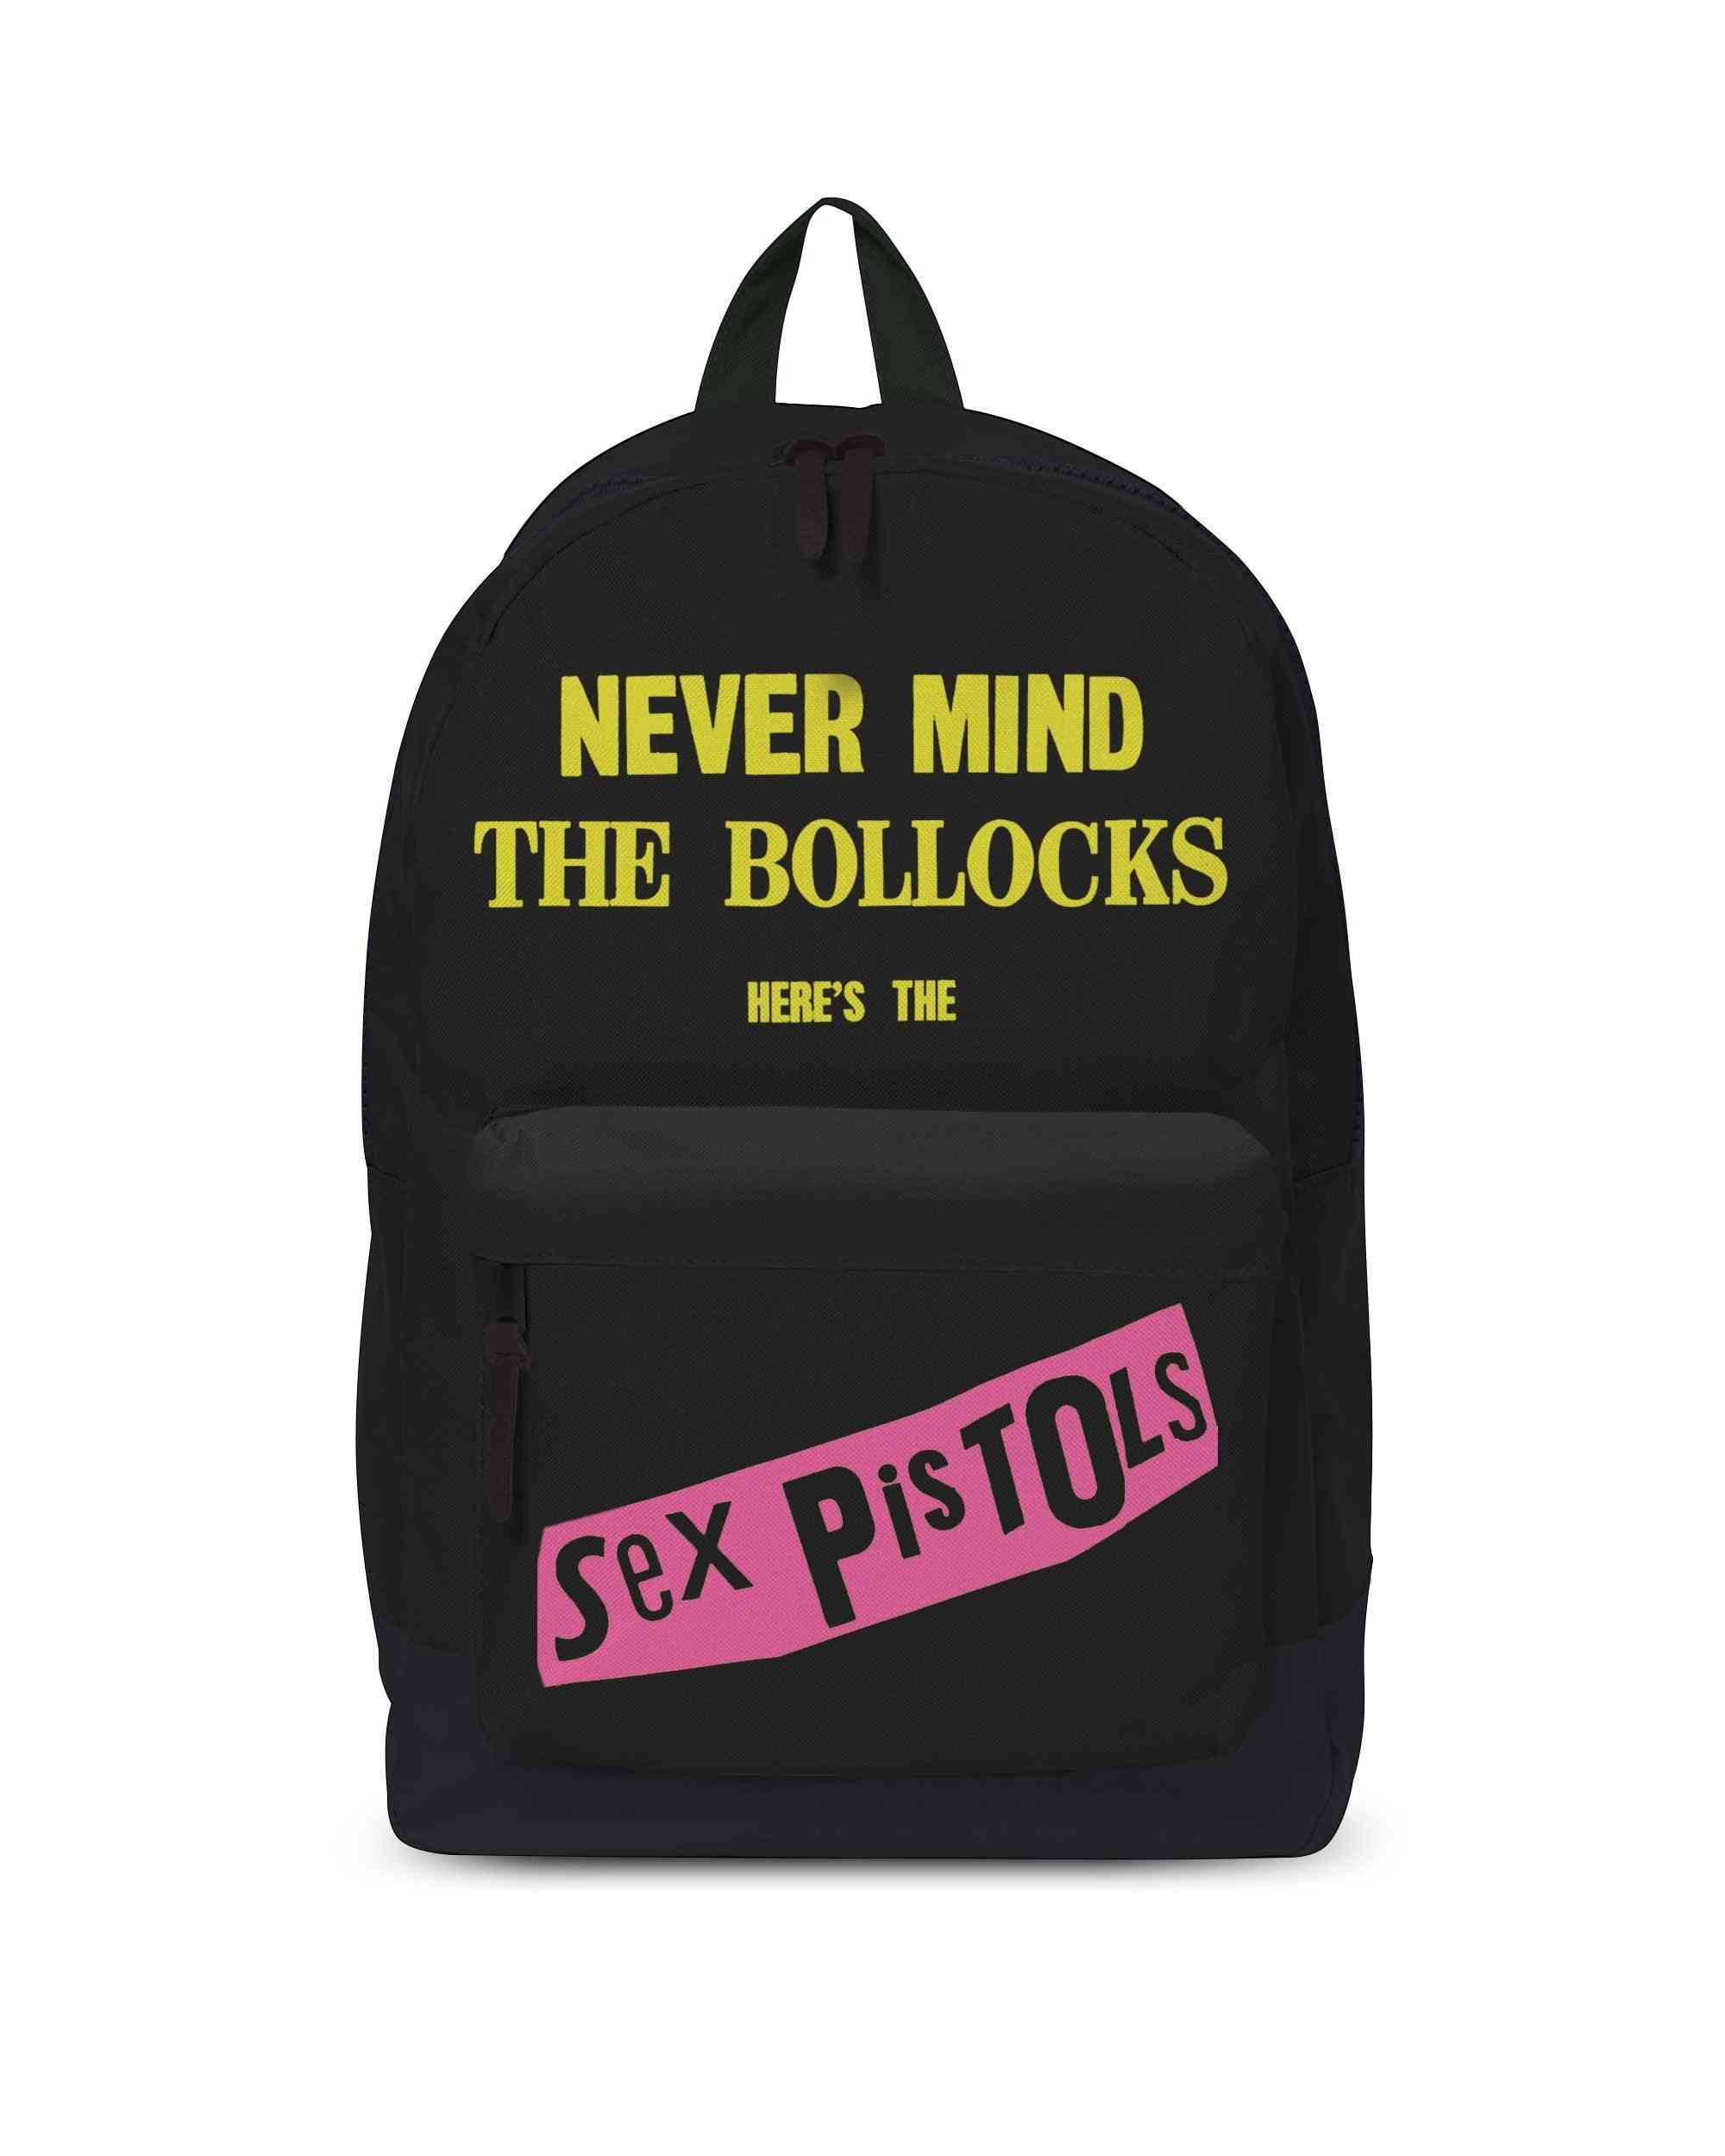 Backpacks - Never Mind The Bollocks